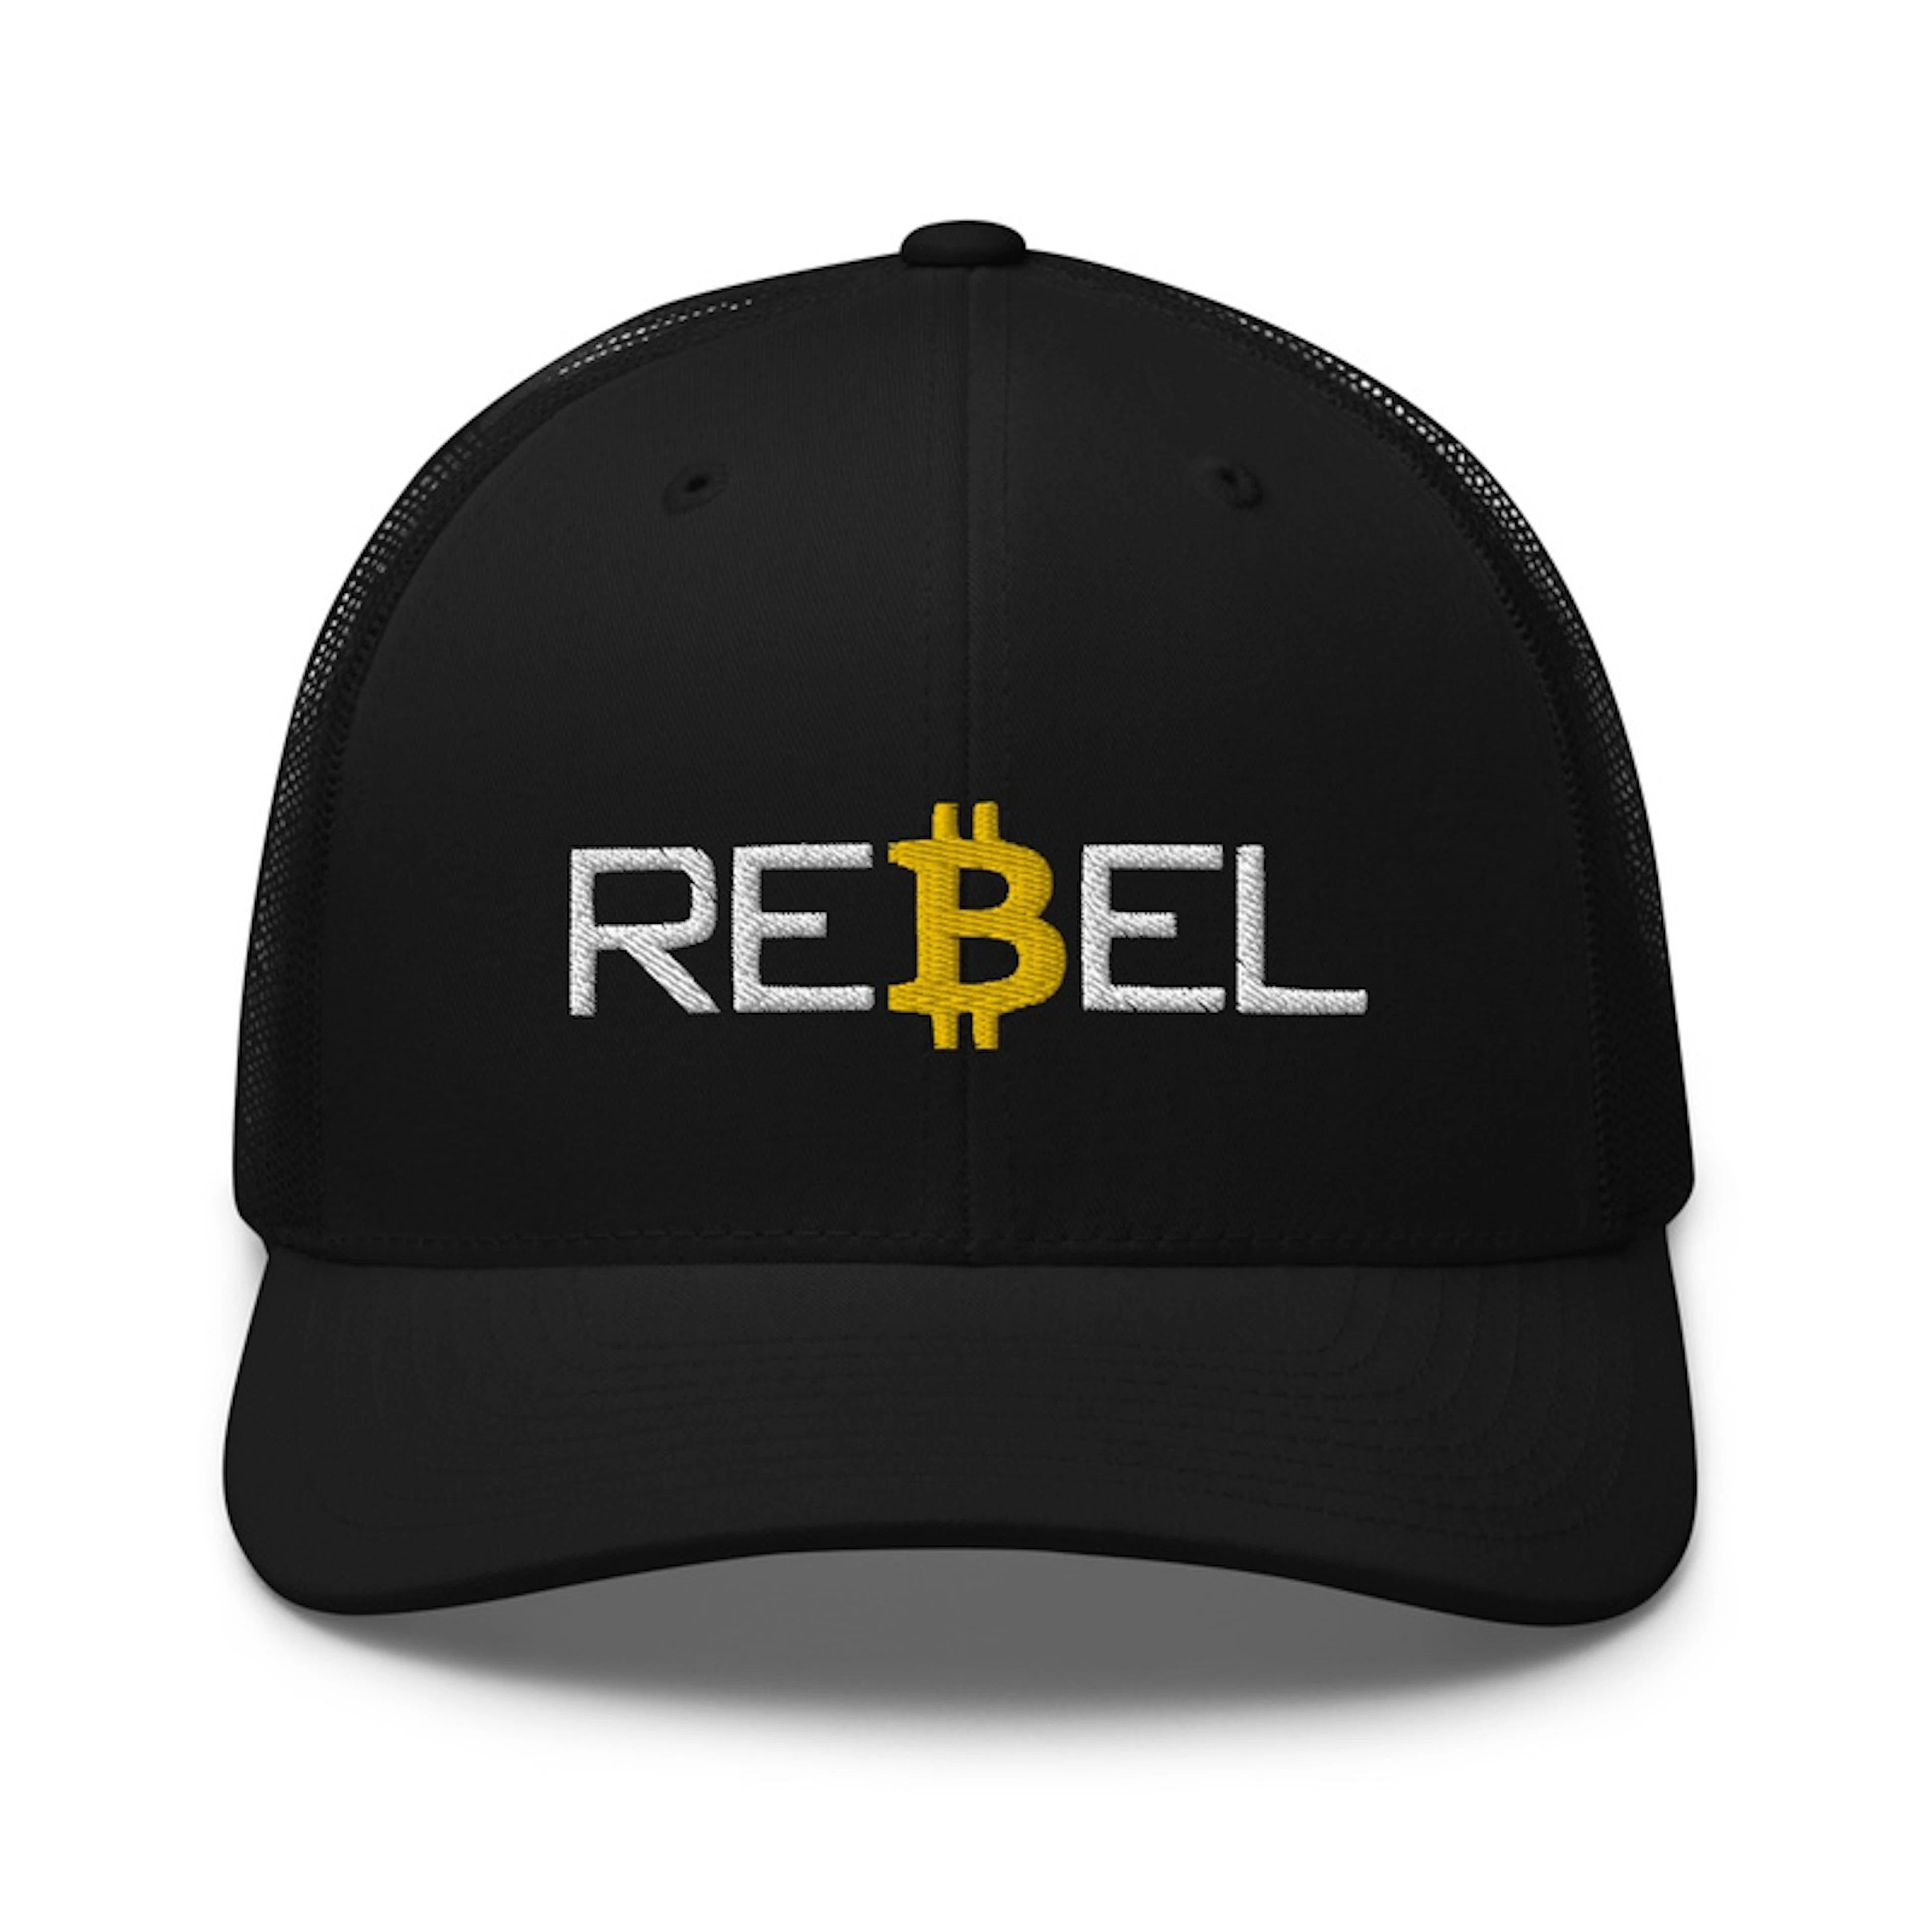 Bitcoin Rebel Trucker Cap